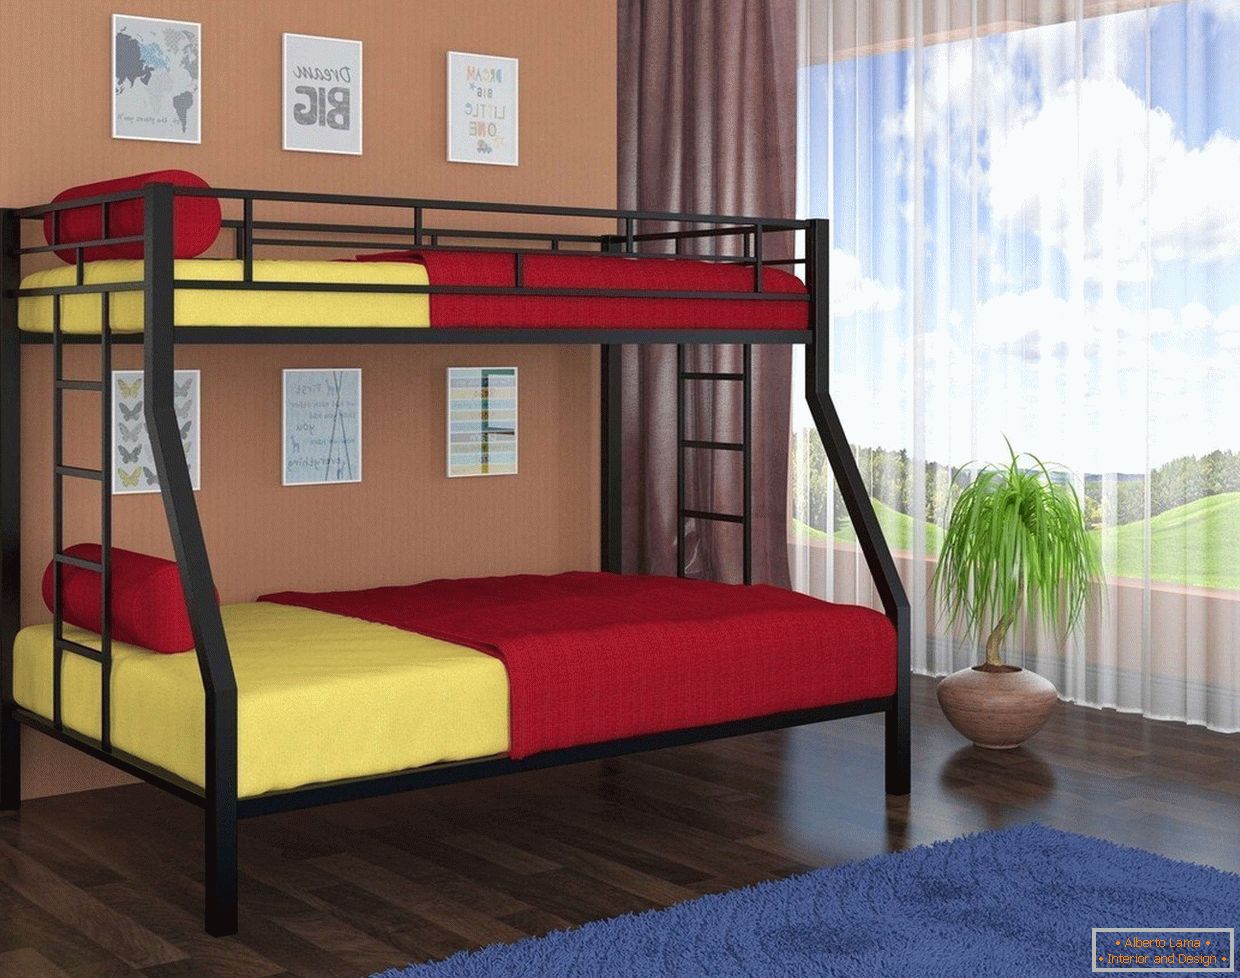 Żółta i czerwona pościel w łóżku piętrowym